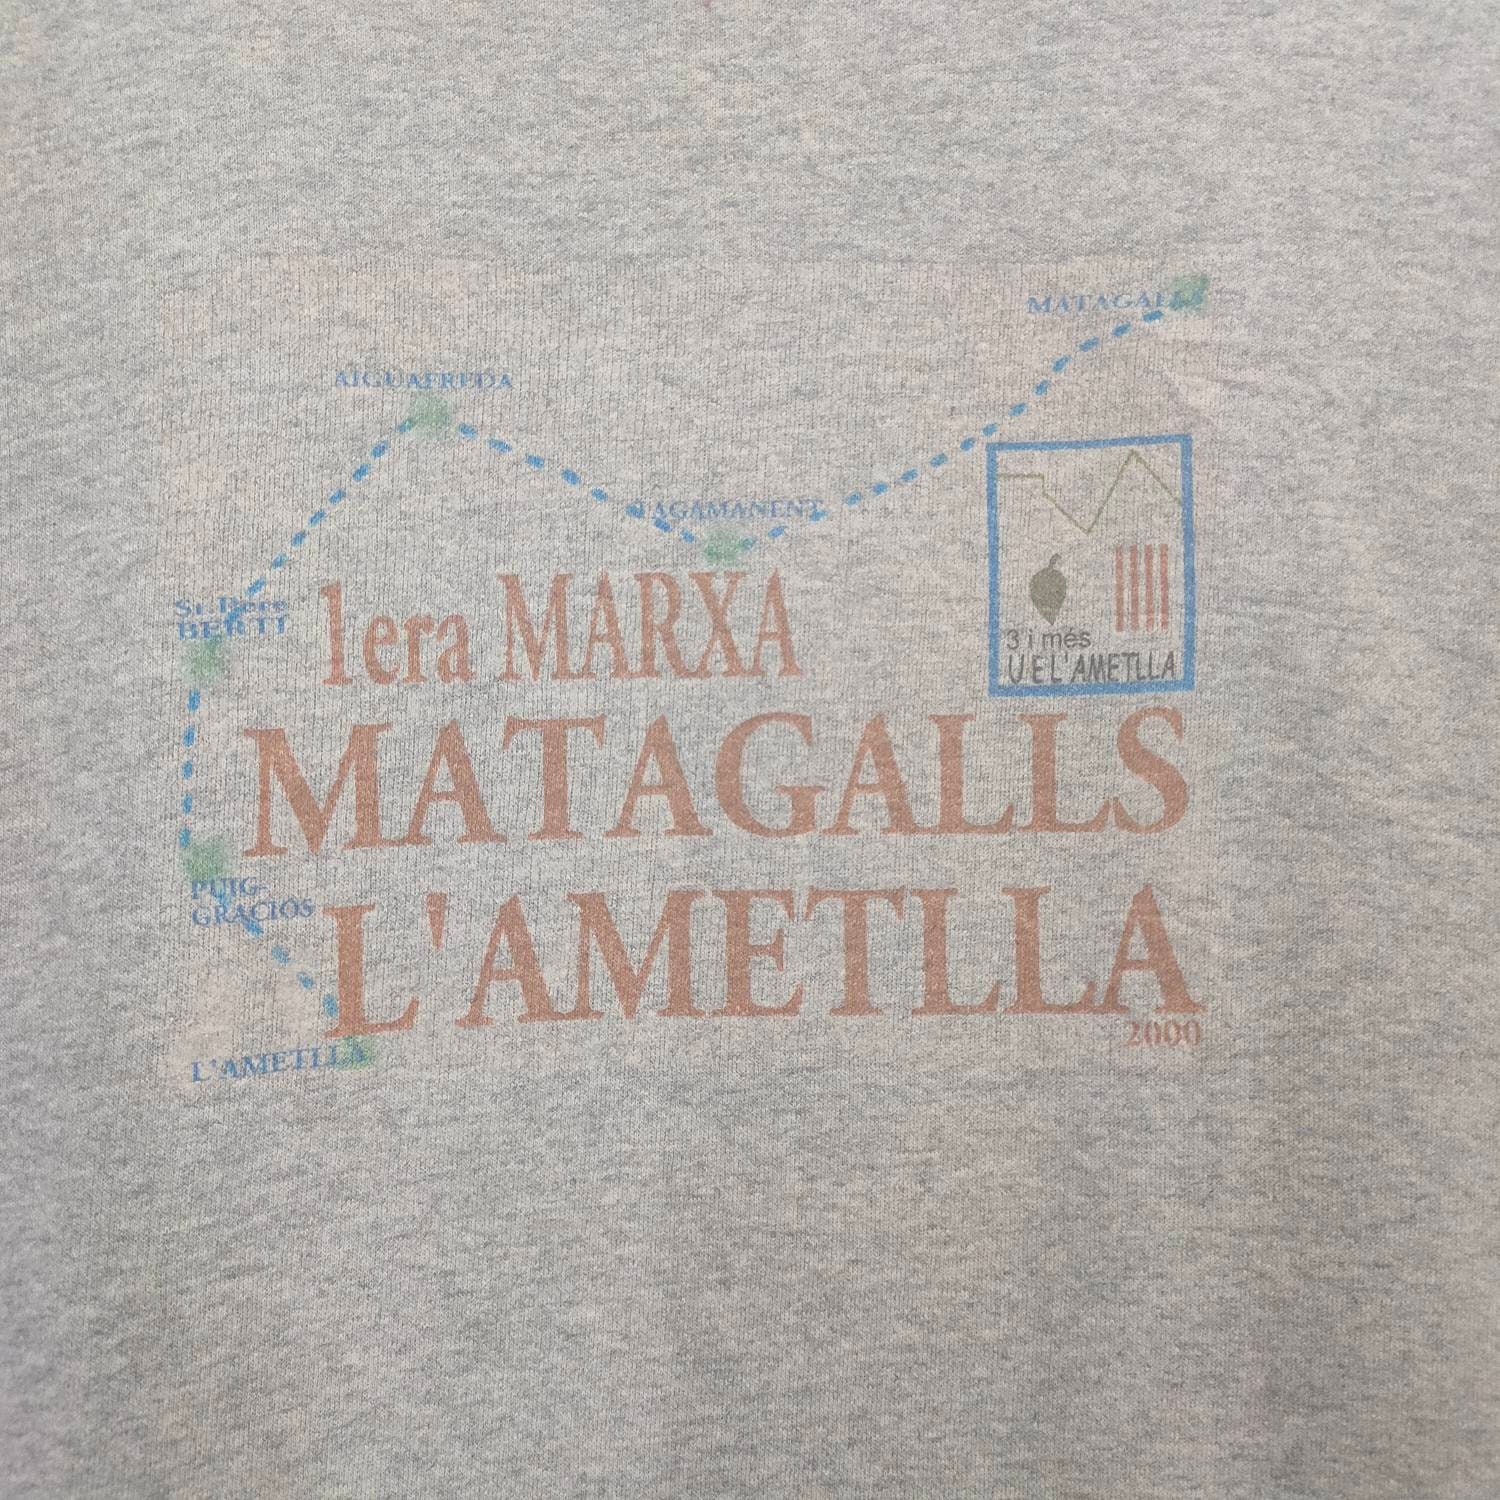 Vintage Sweatshirt L'ametlla Matagalls Spain Sweater - Etsy